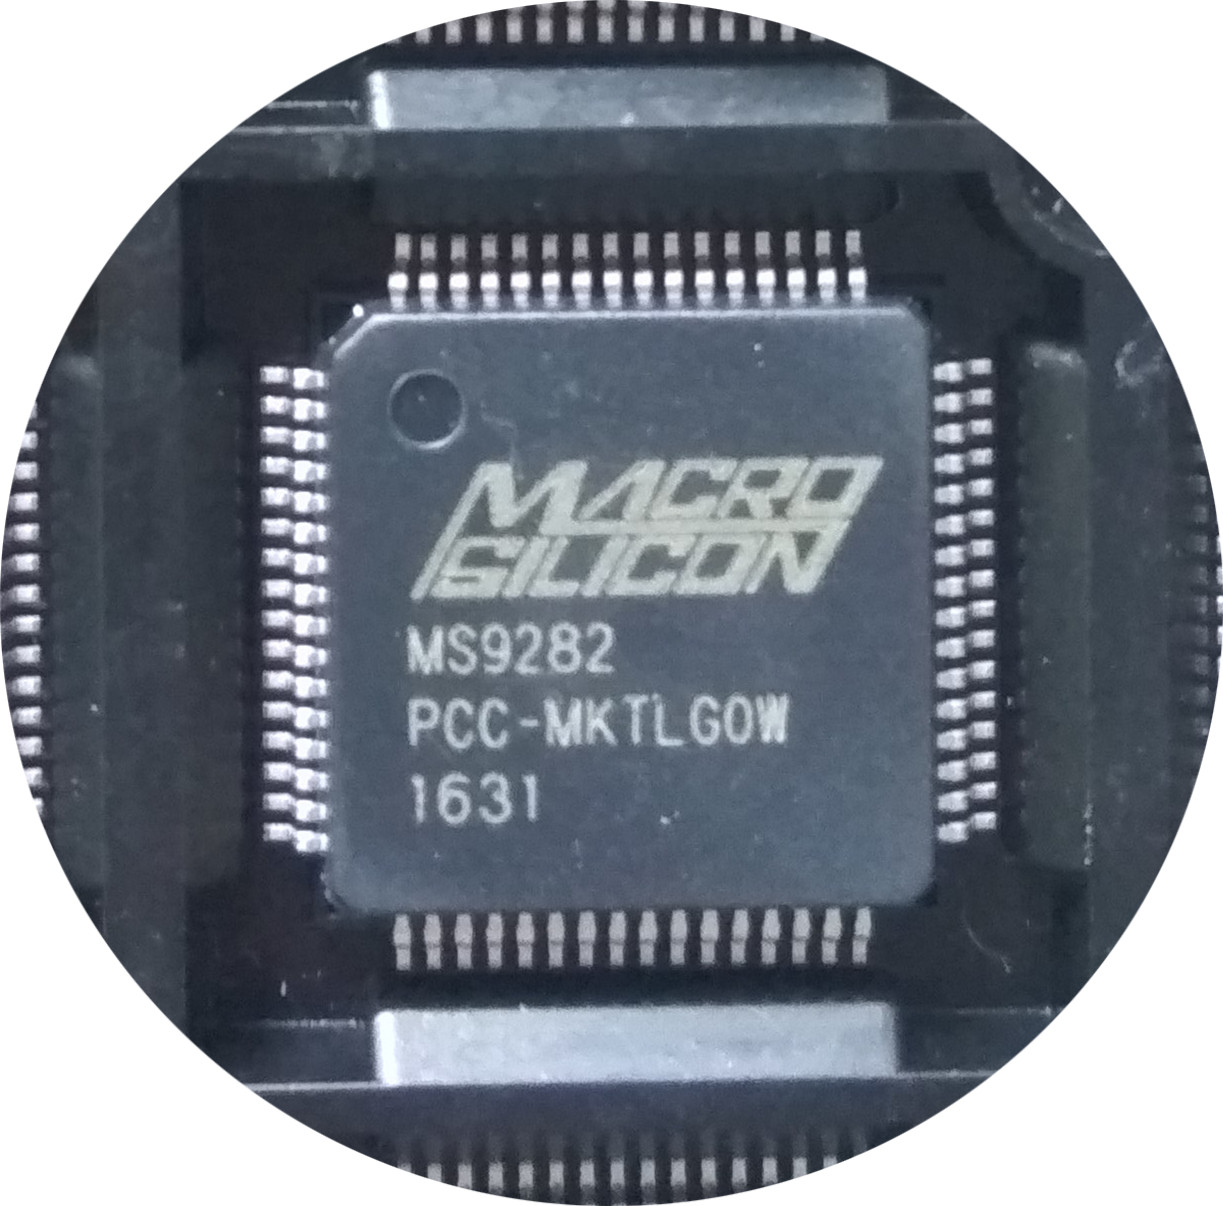 MS9282芯片方案VGA转HDMI视频转换方案